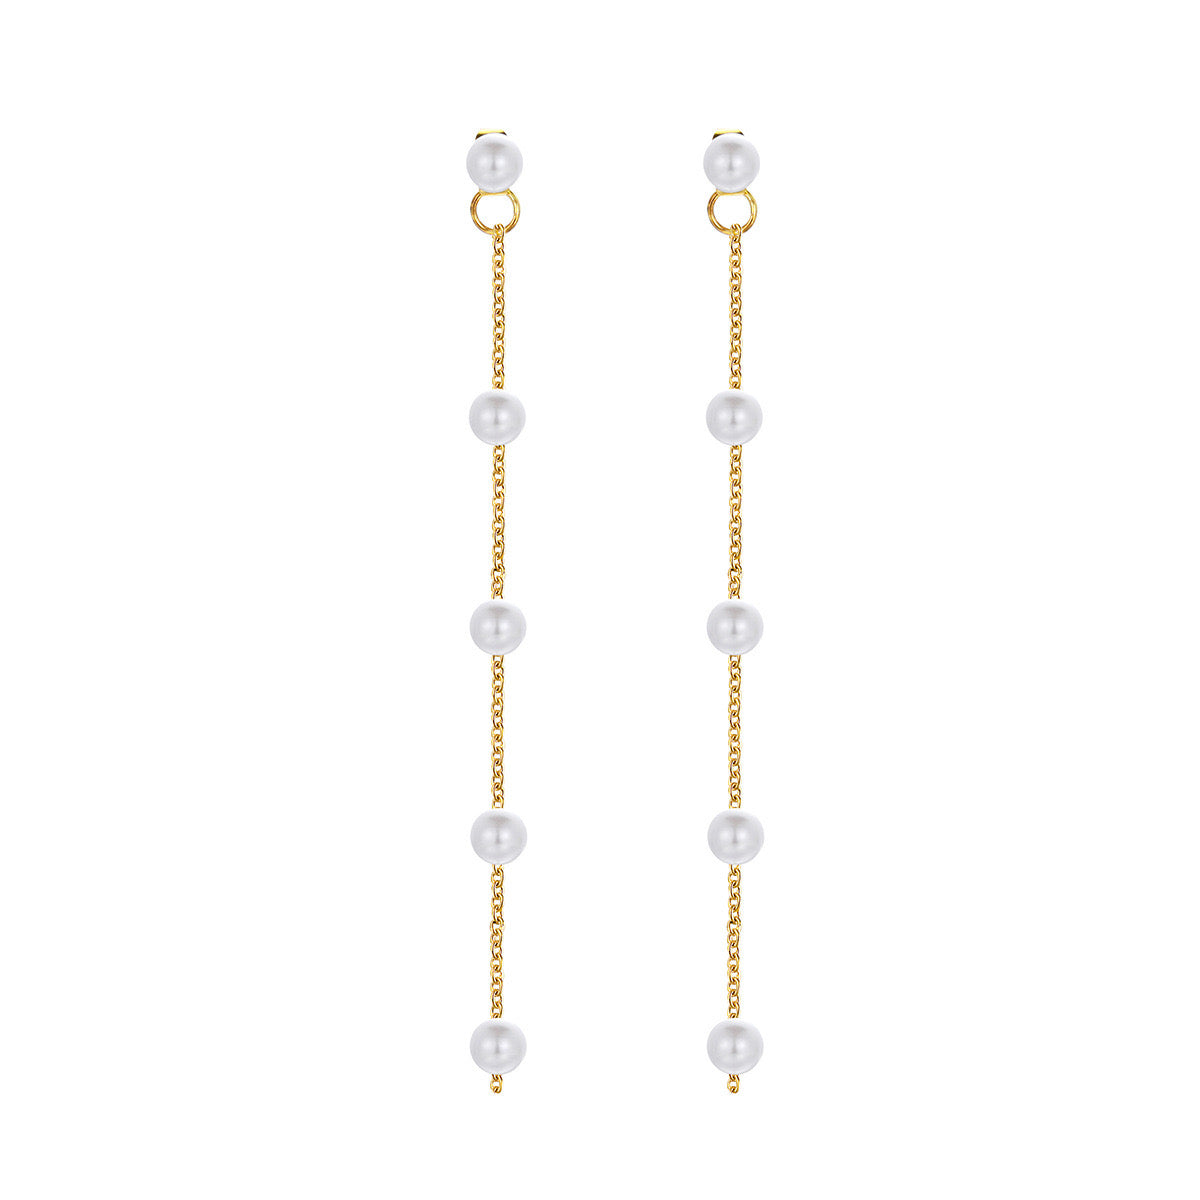 Elegant Pearl Dangle Drop Earrings for Women